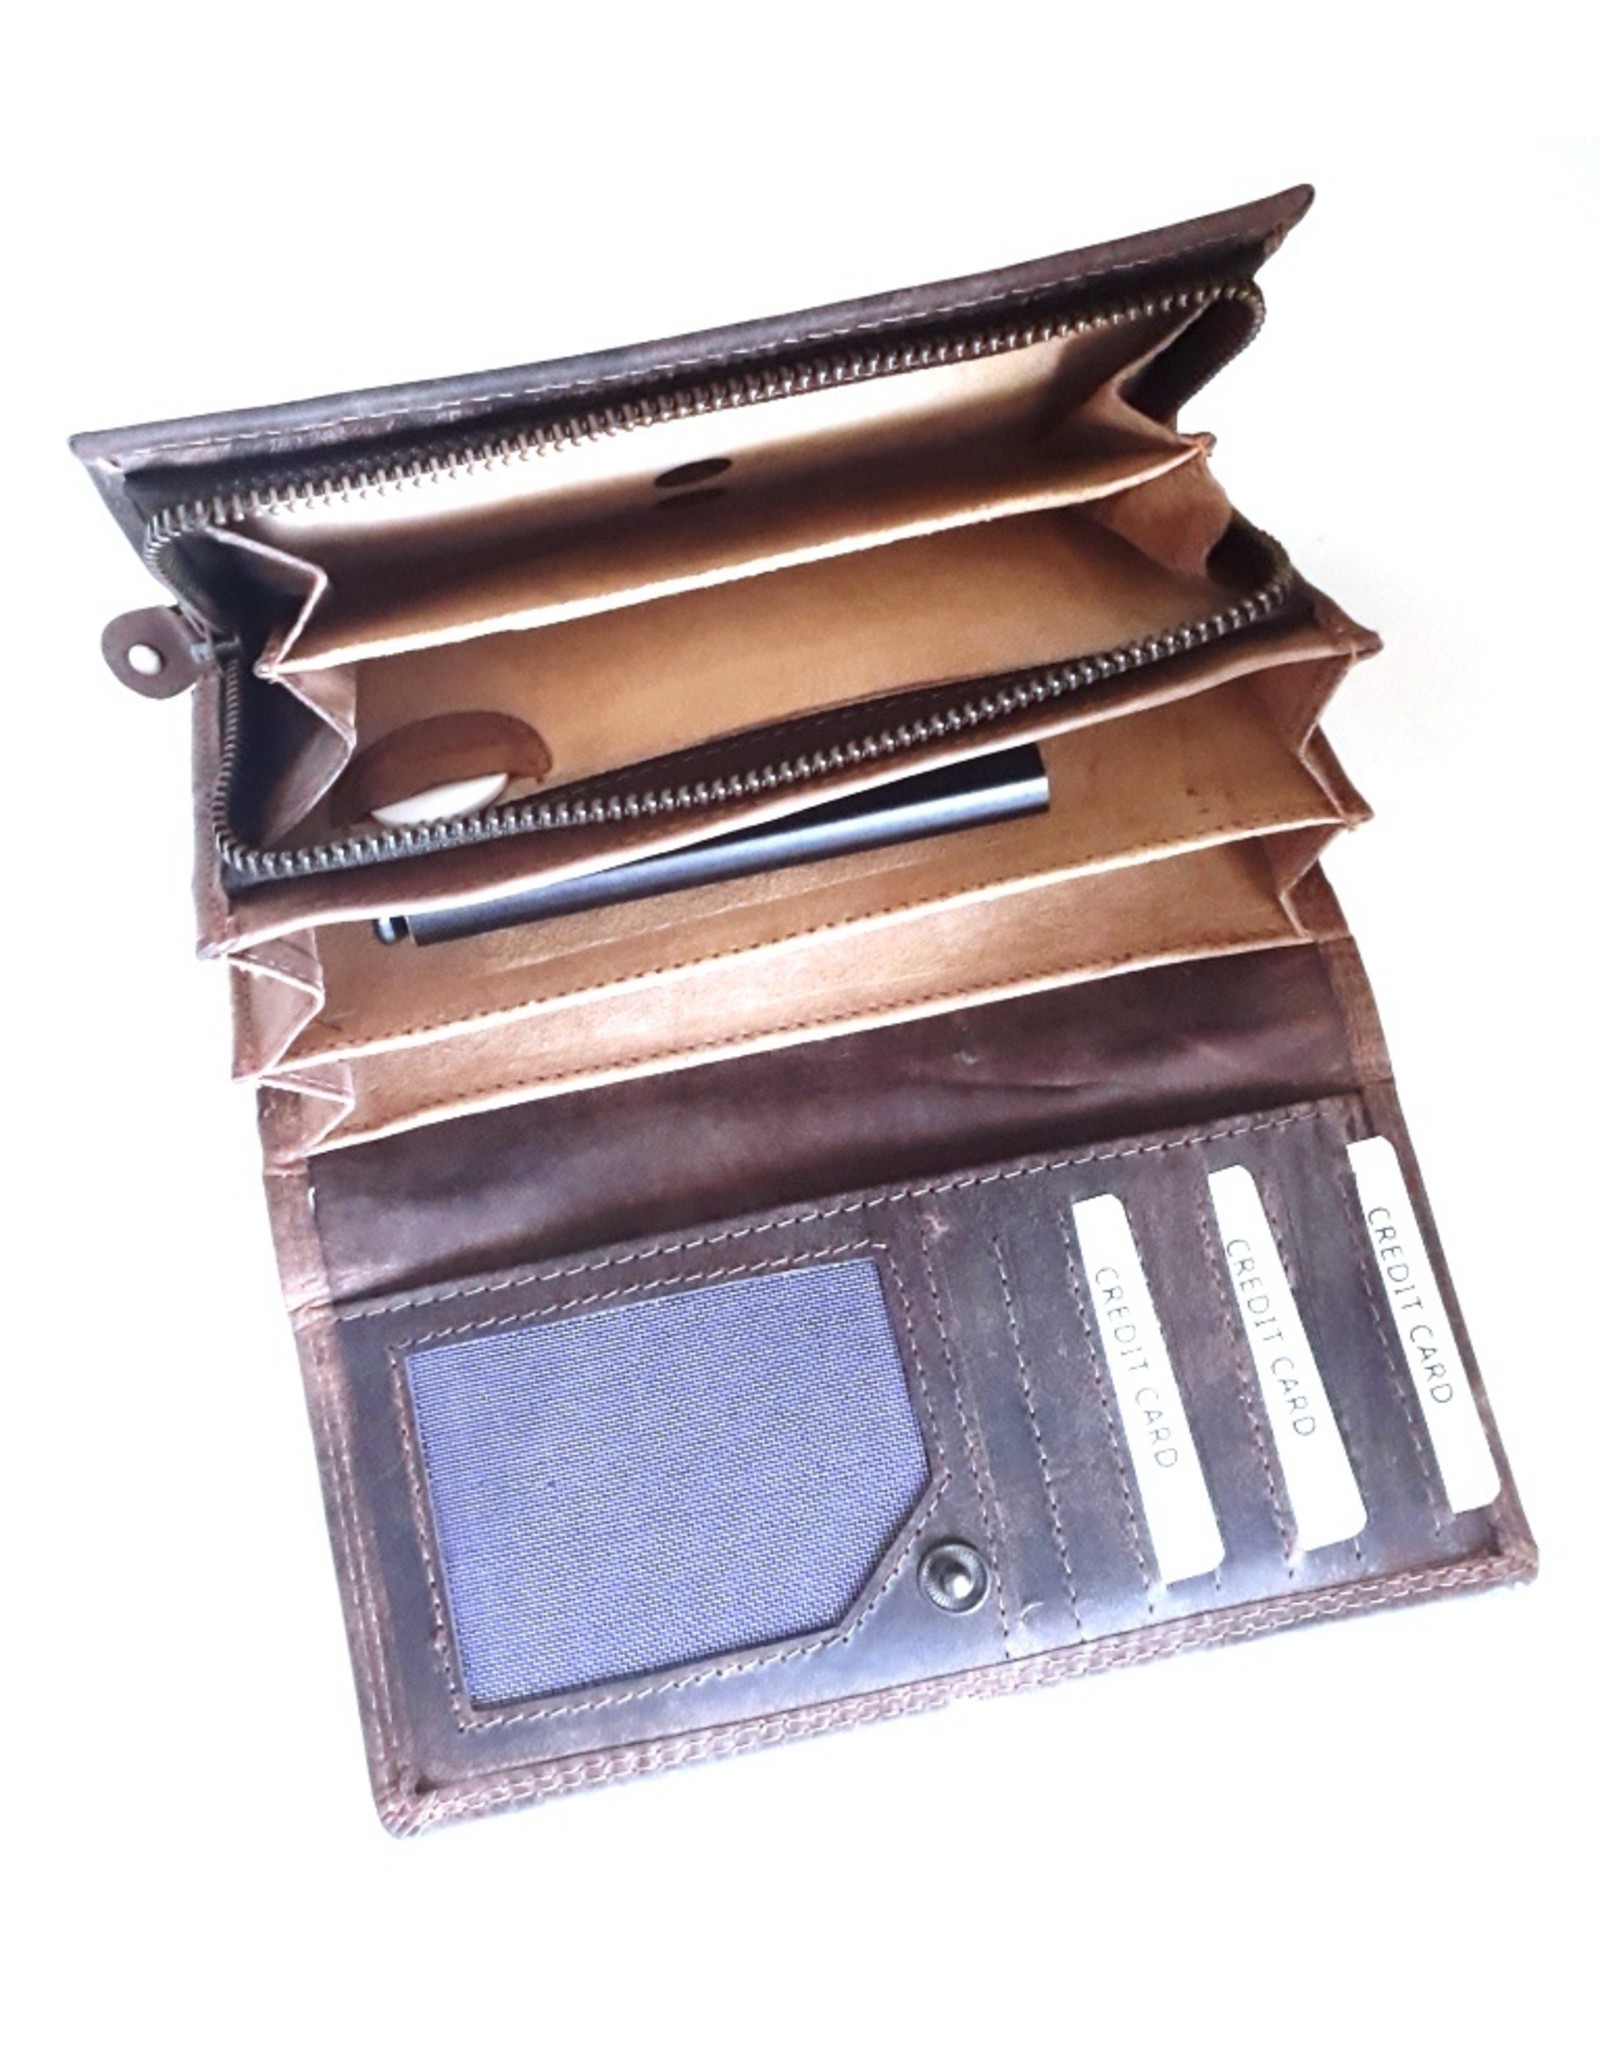 BestBull Leather Wallets - Leather wallet BestBull (large)